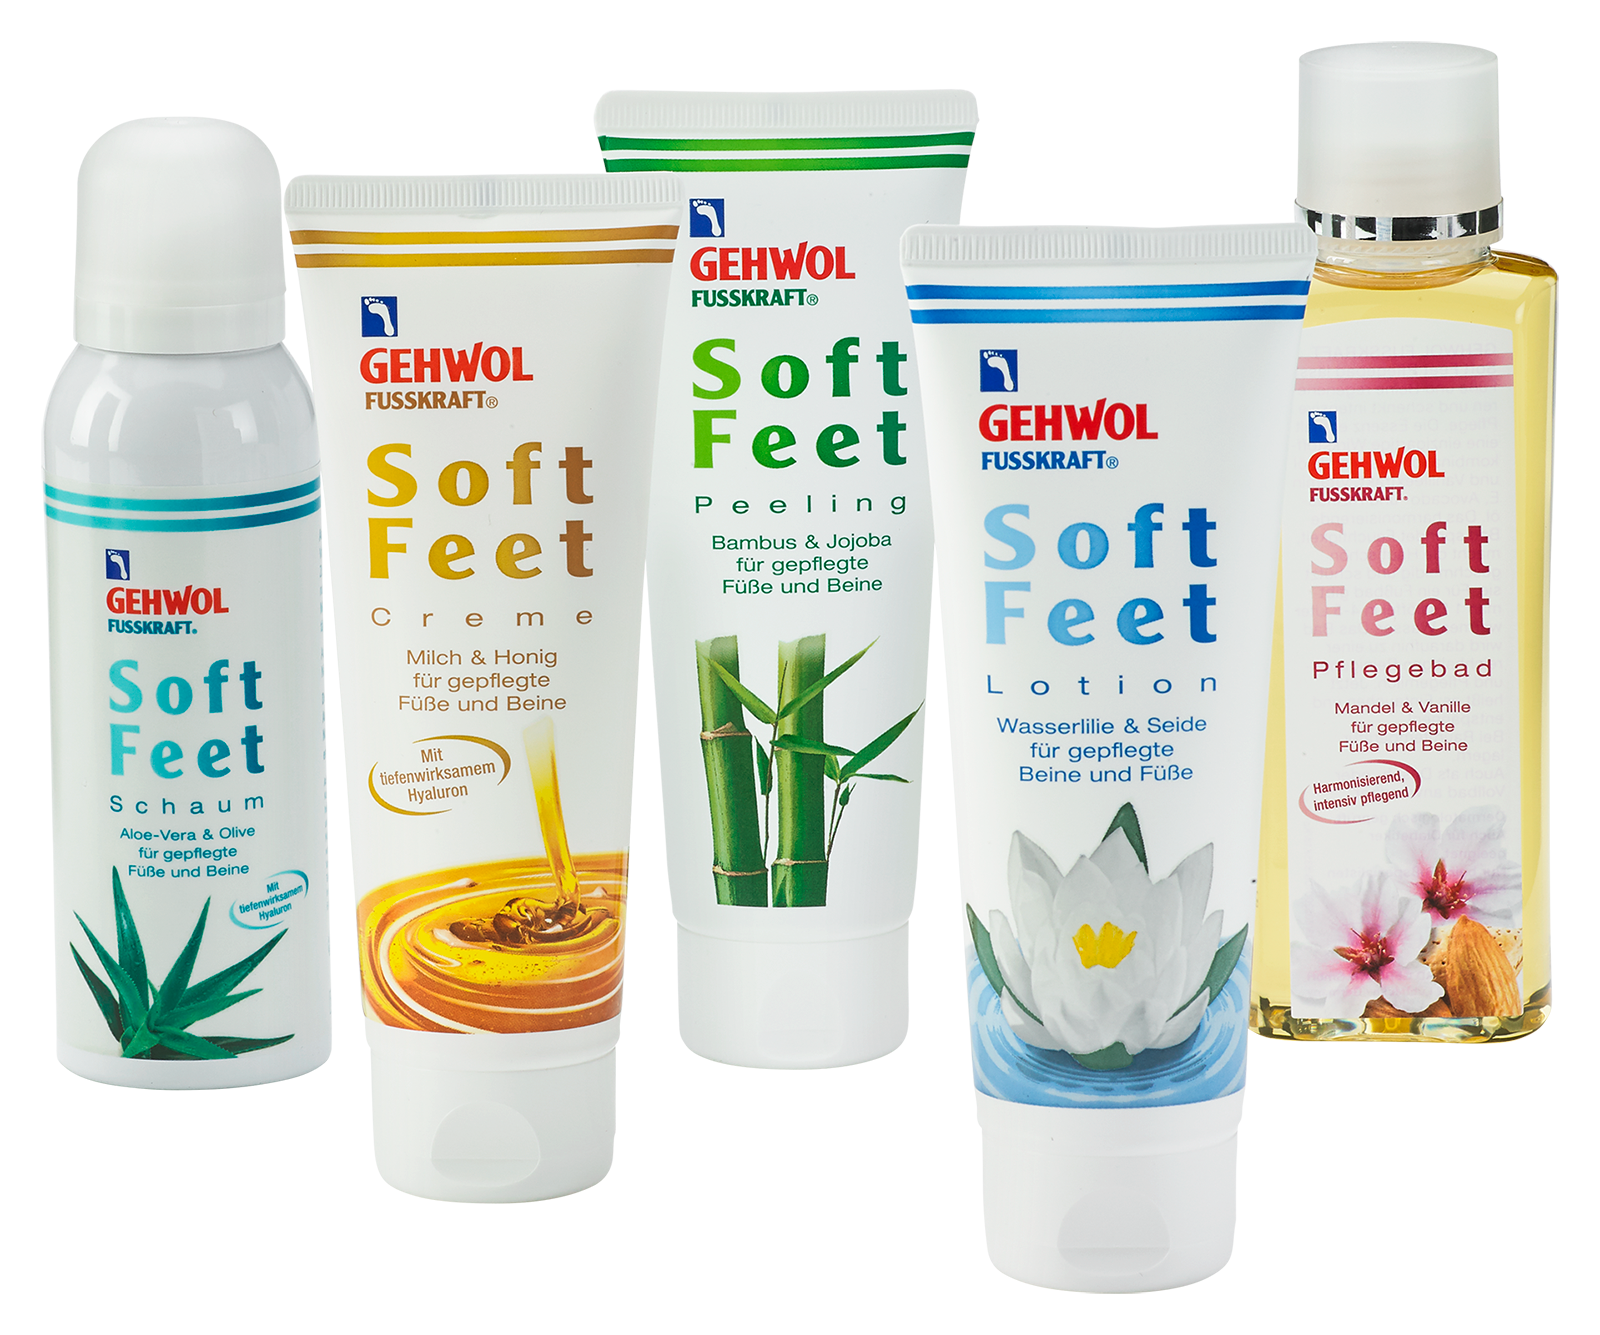 GEHWOL FUSSKRAFT Soft Feet Lotion 125 ml